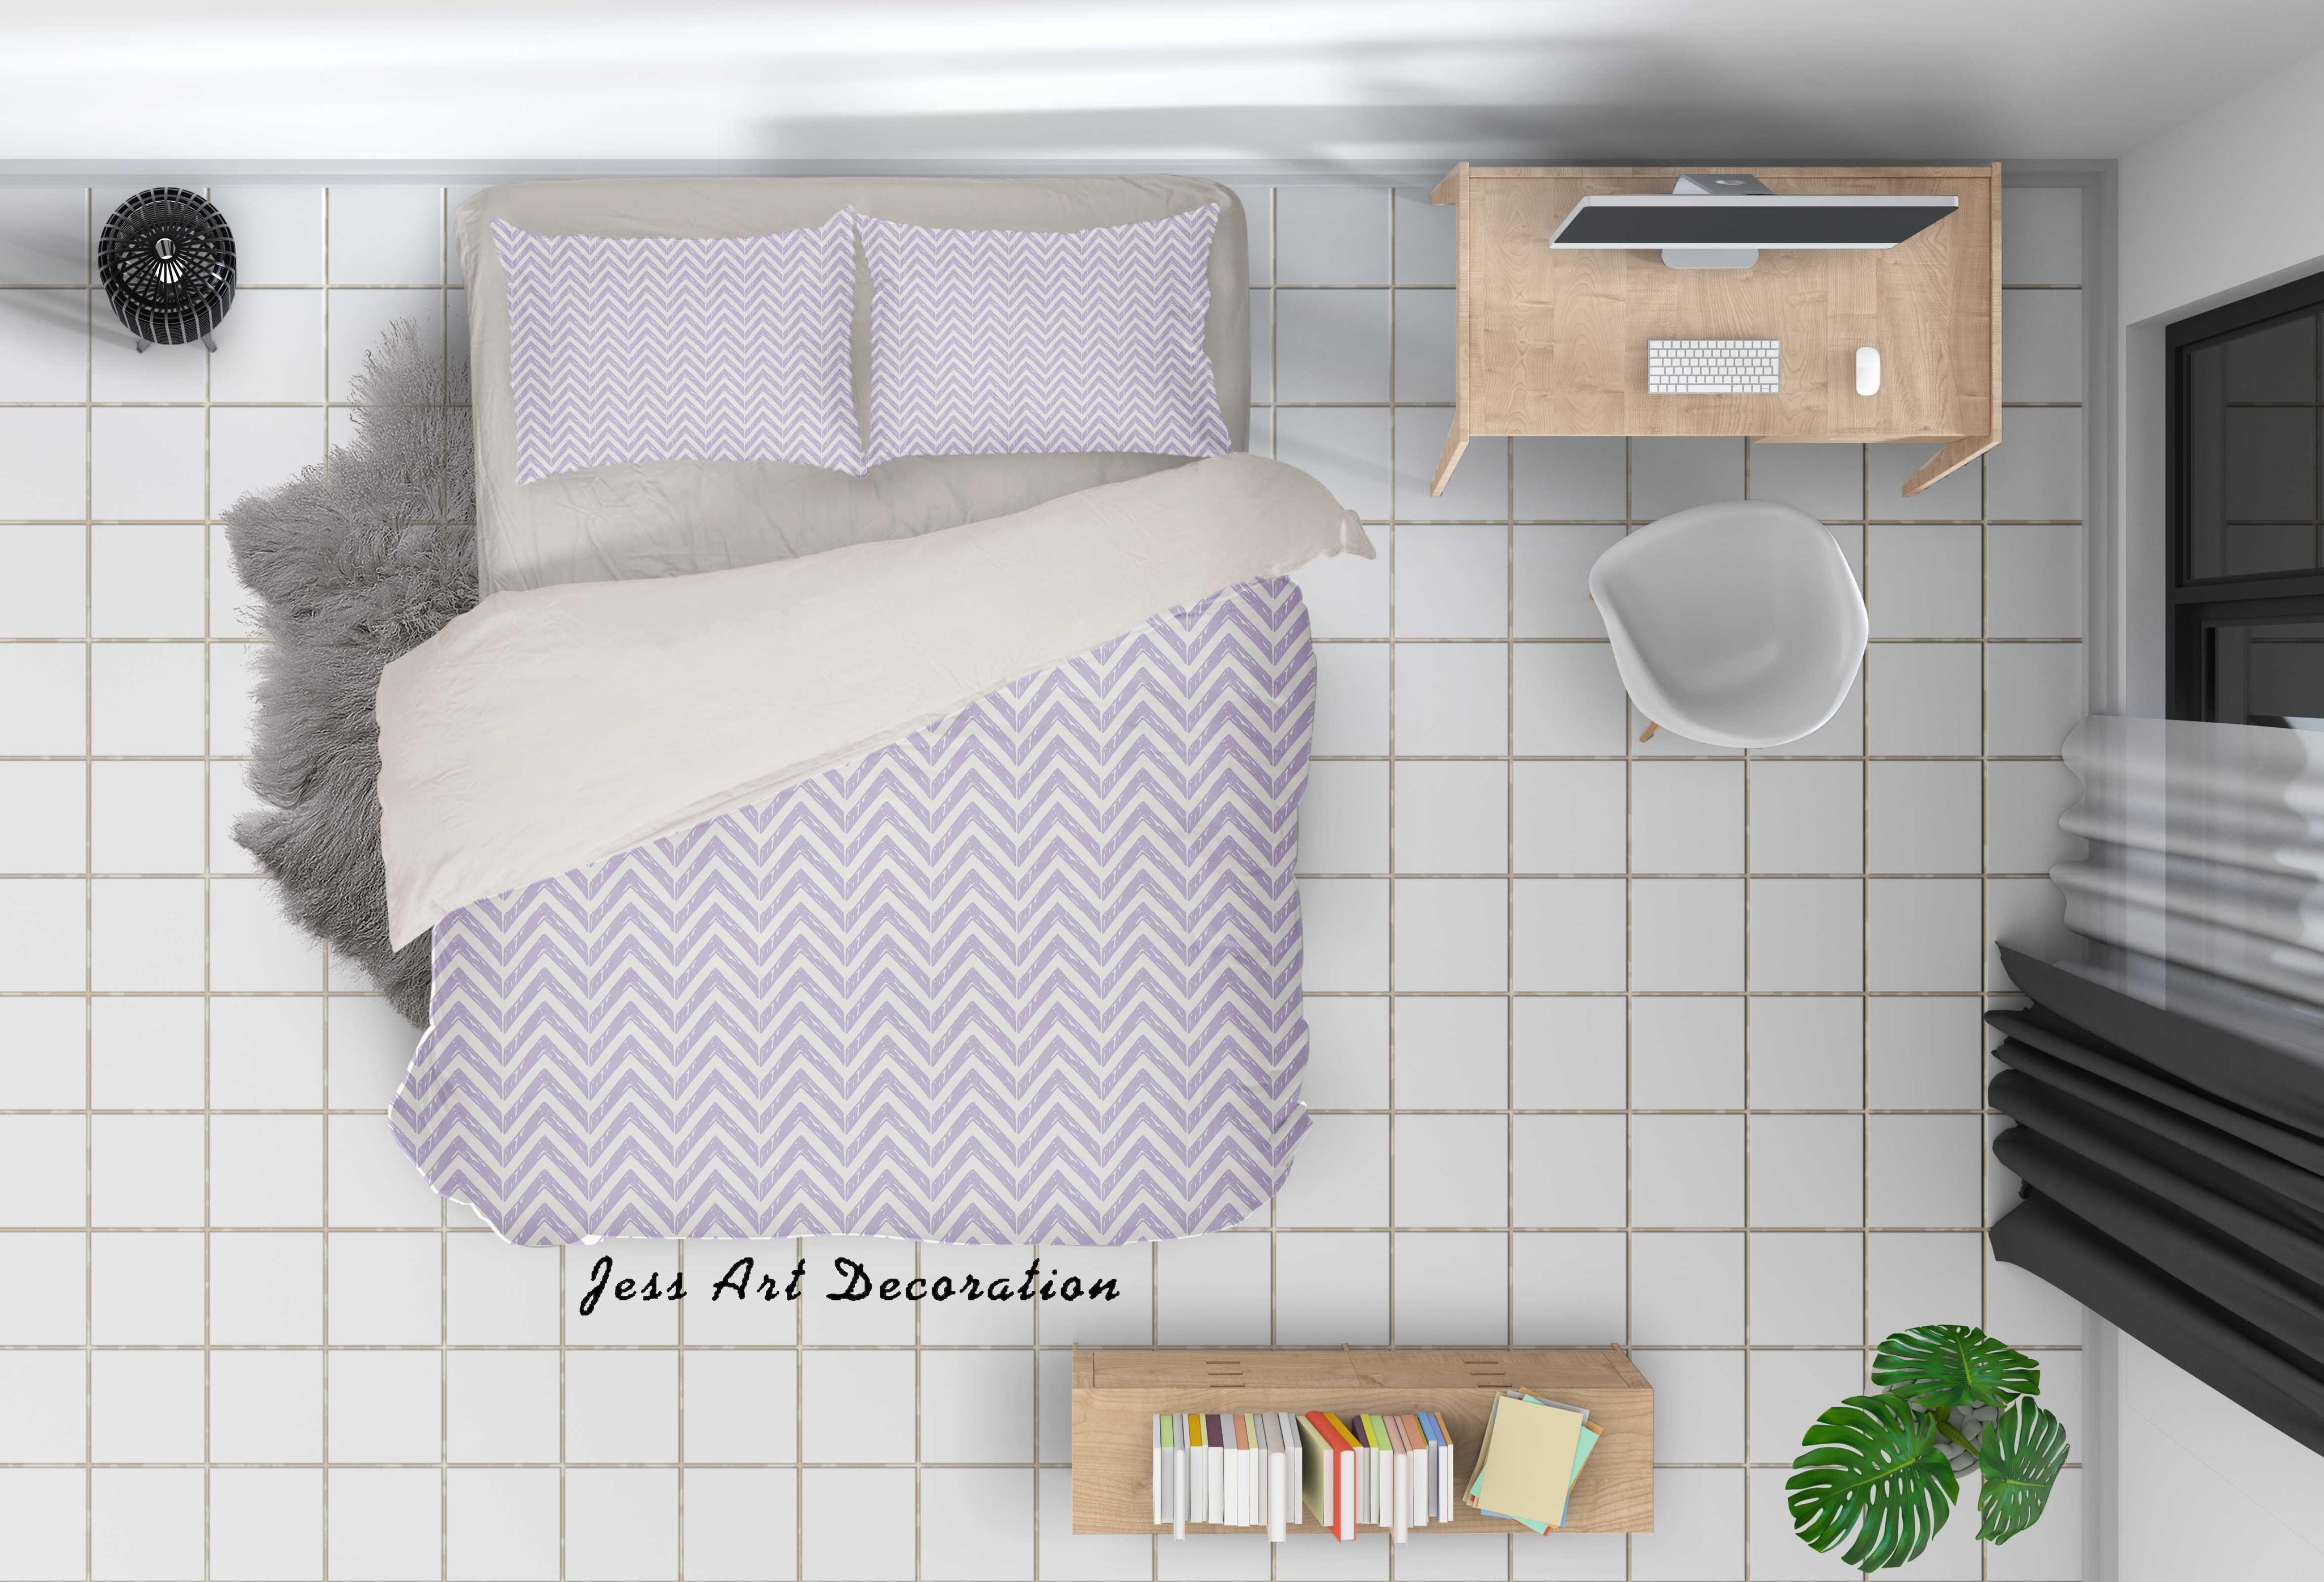 3D Wavy Line Quilt Cover Set Bedding Set Duvet Cover Pillowcases SF02- Jess Art Decoration